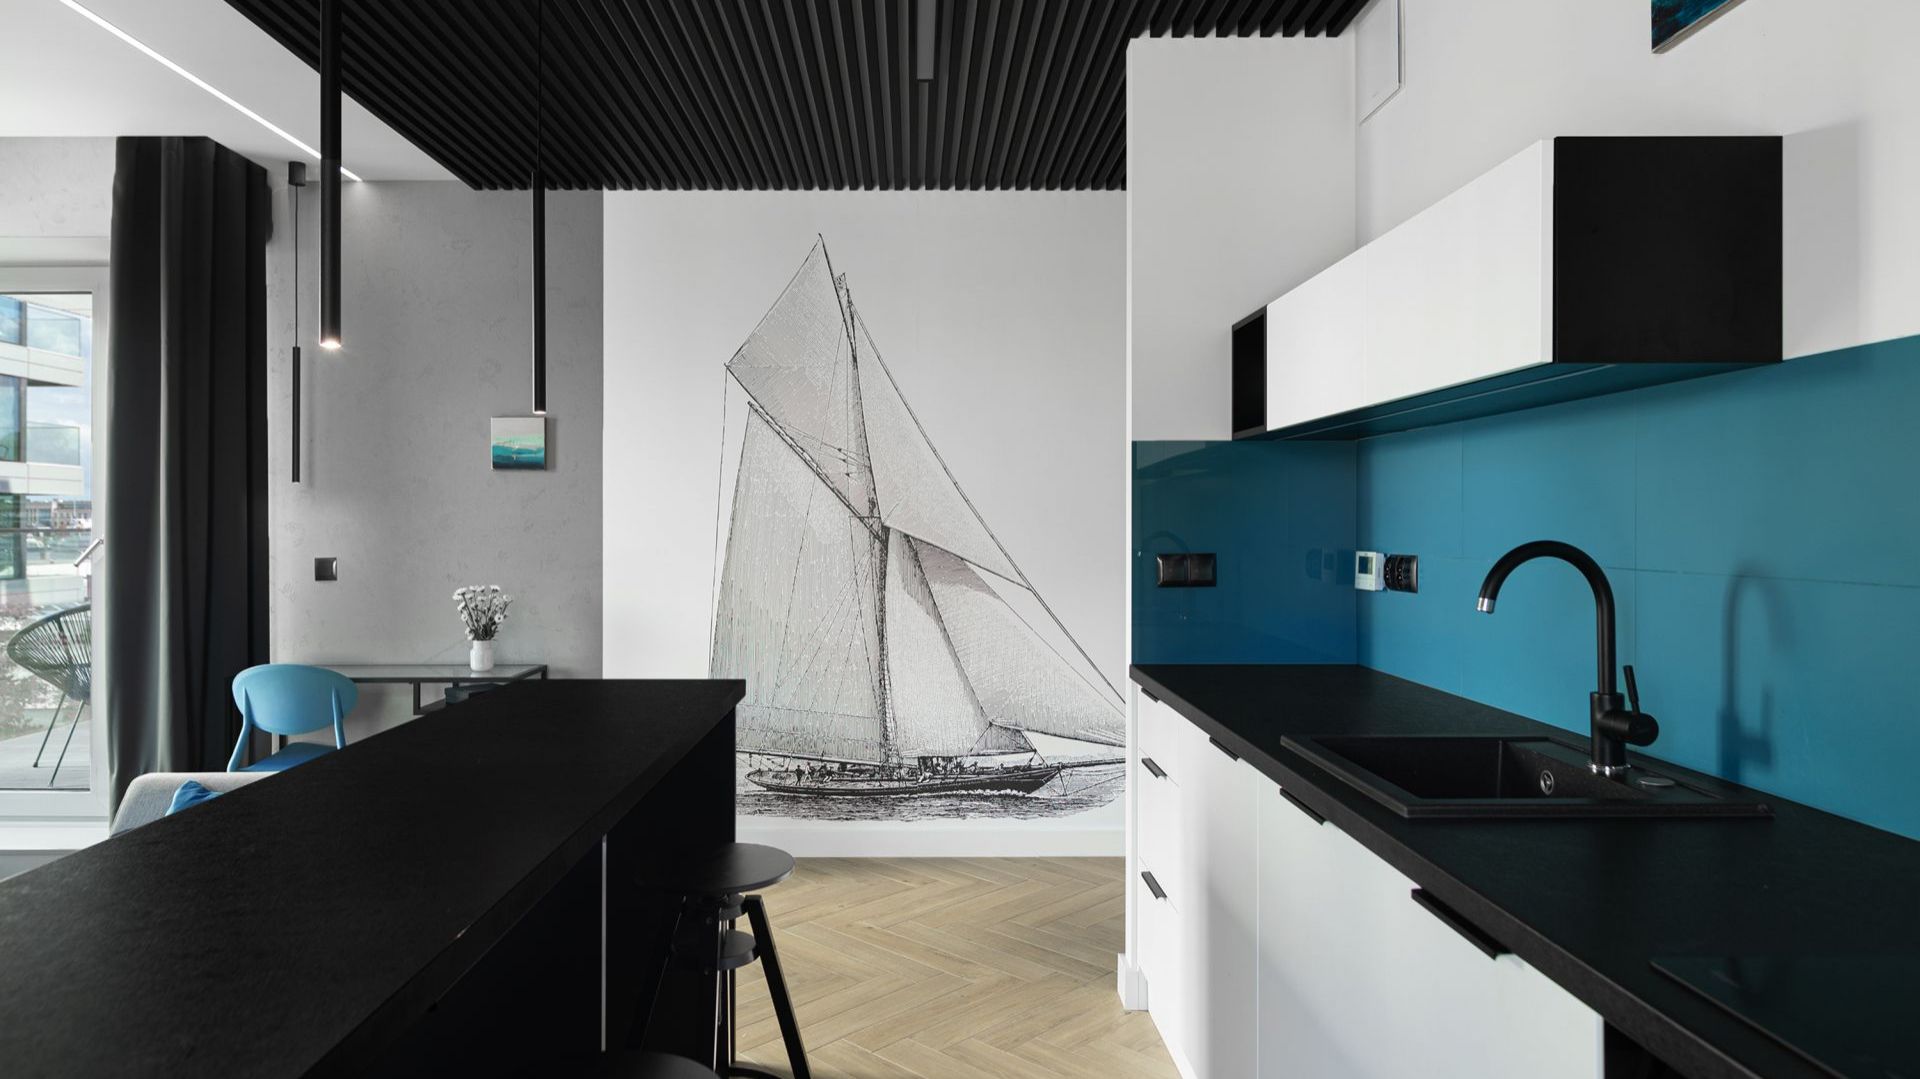 49-metrowe mieszkanie w Gdyni. Morskie kolory i biało-czarna kuchnia!